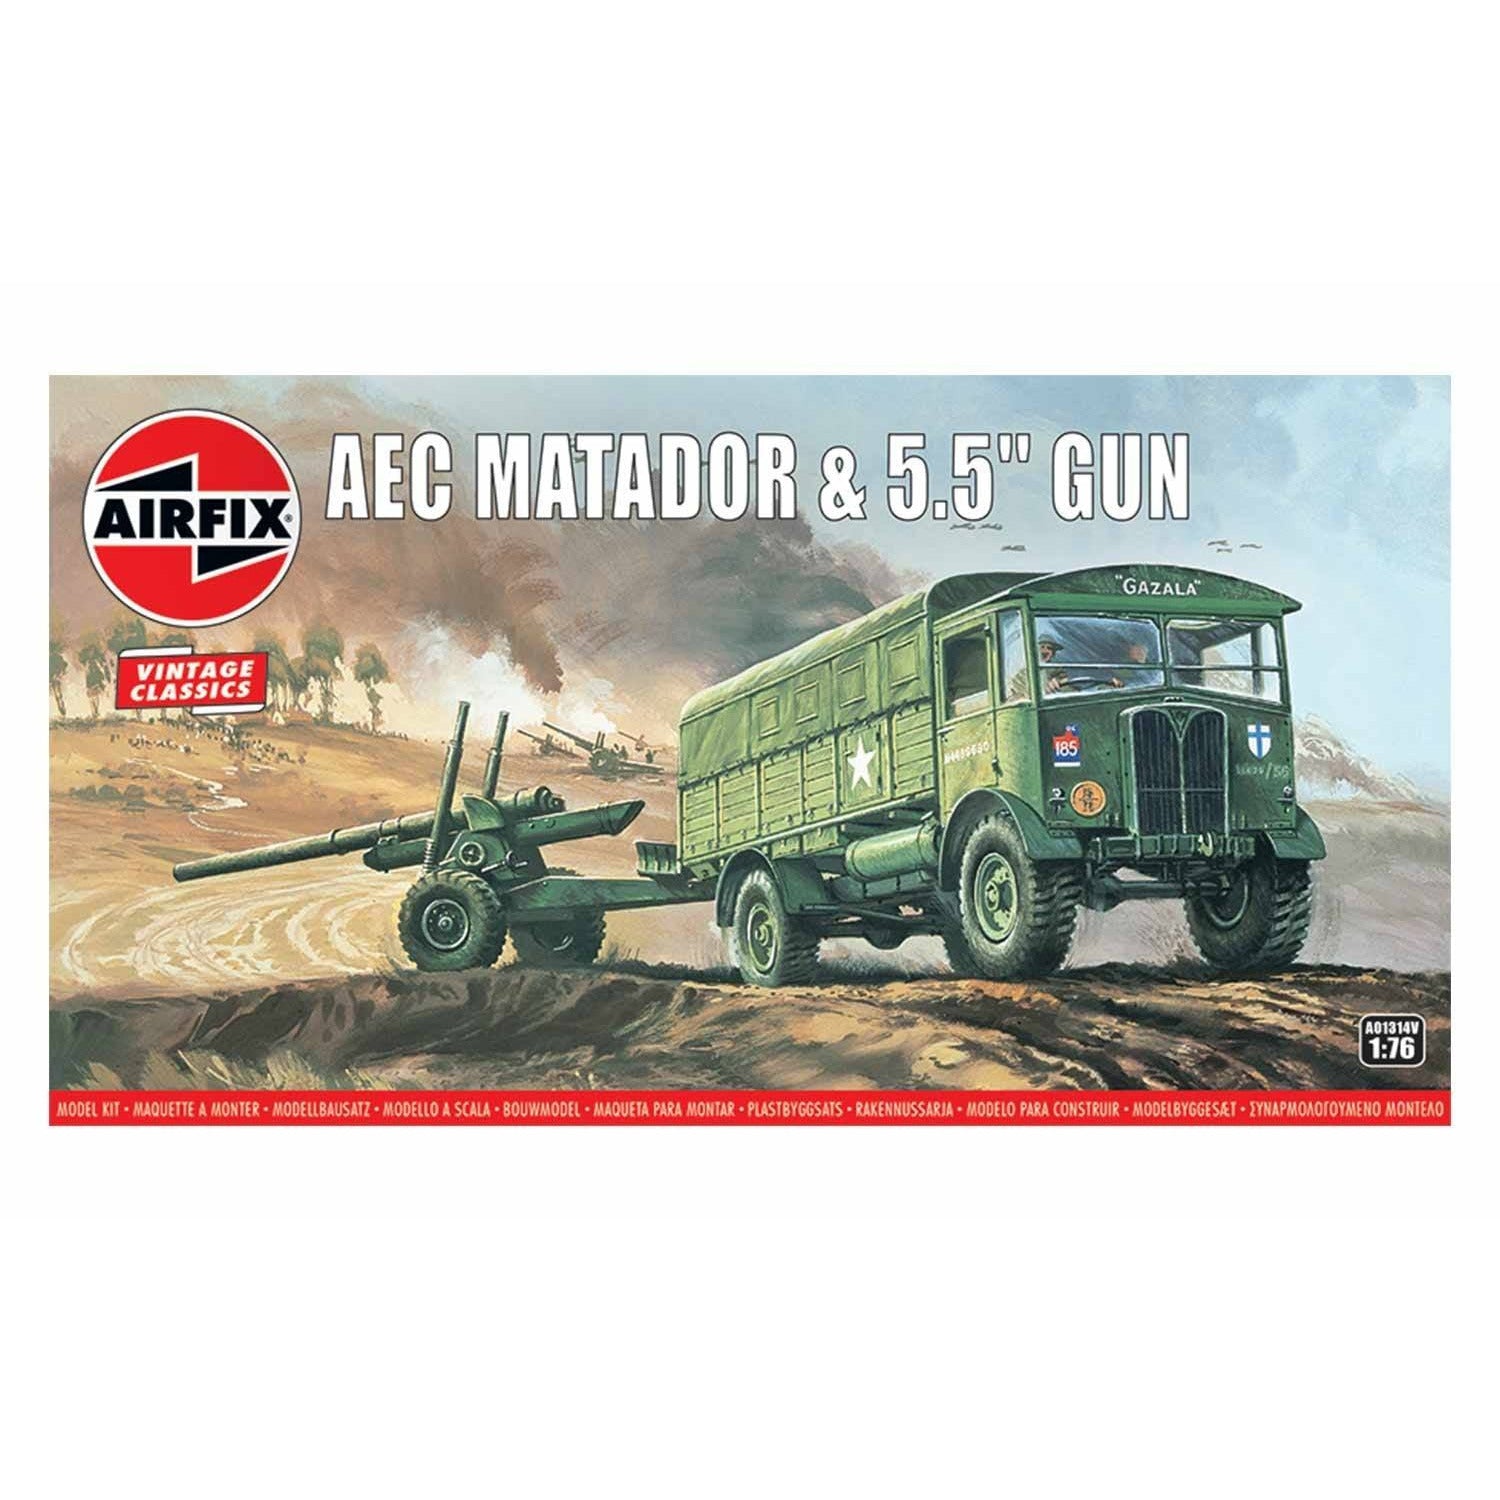 AEC Matatdor & 5.5" Gun 1/76 #01314 by Airfix